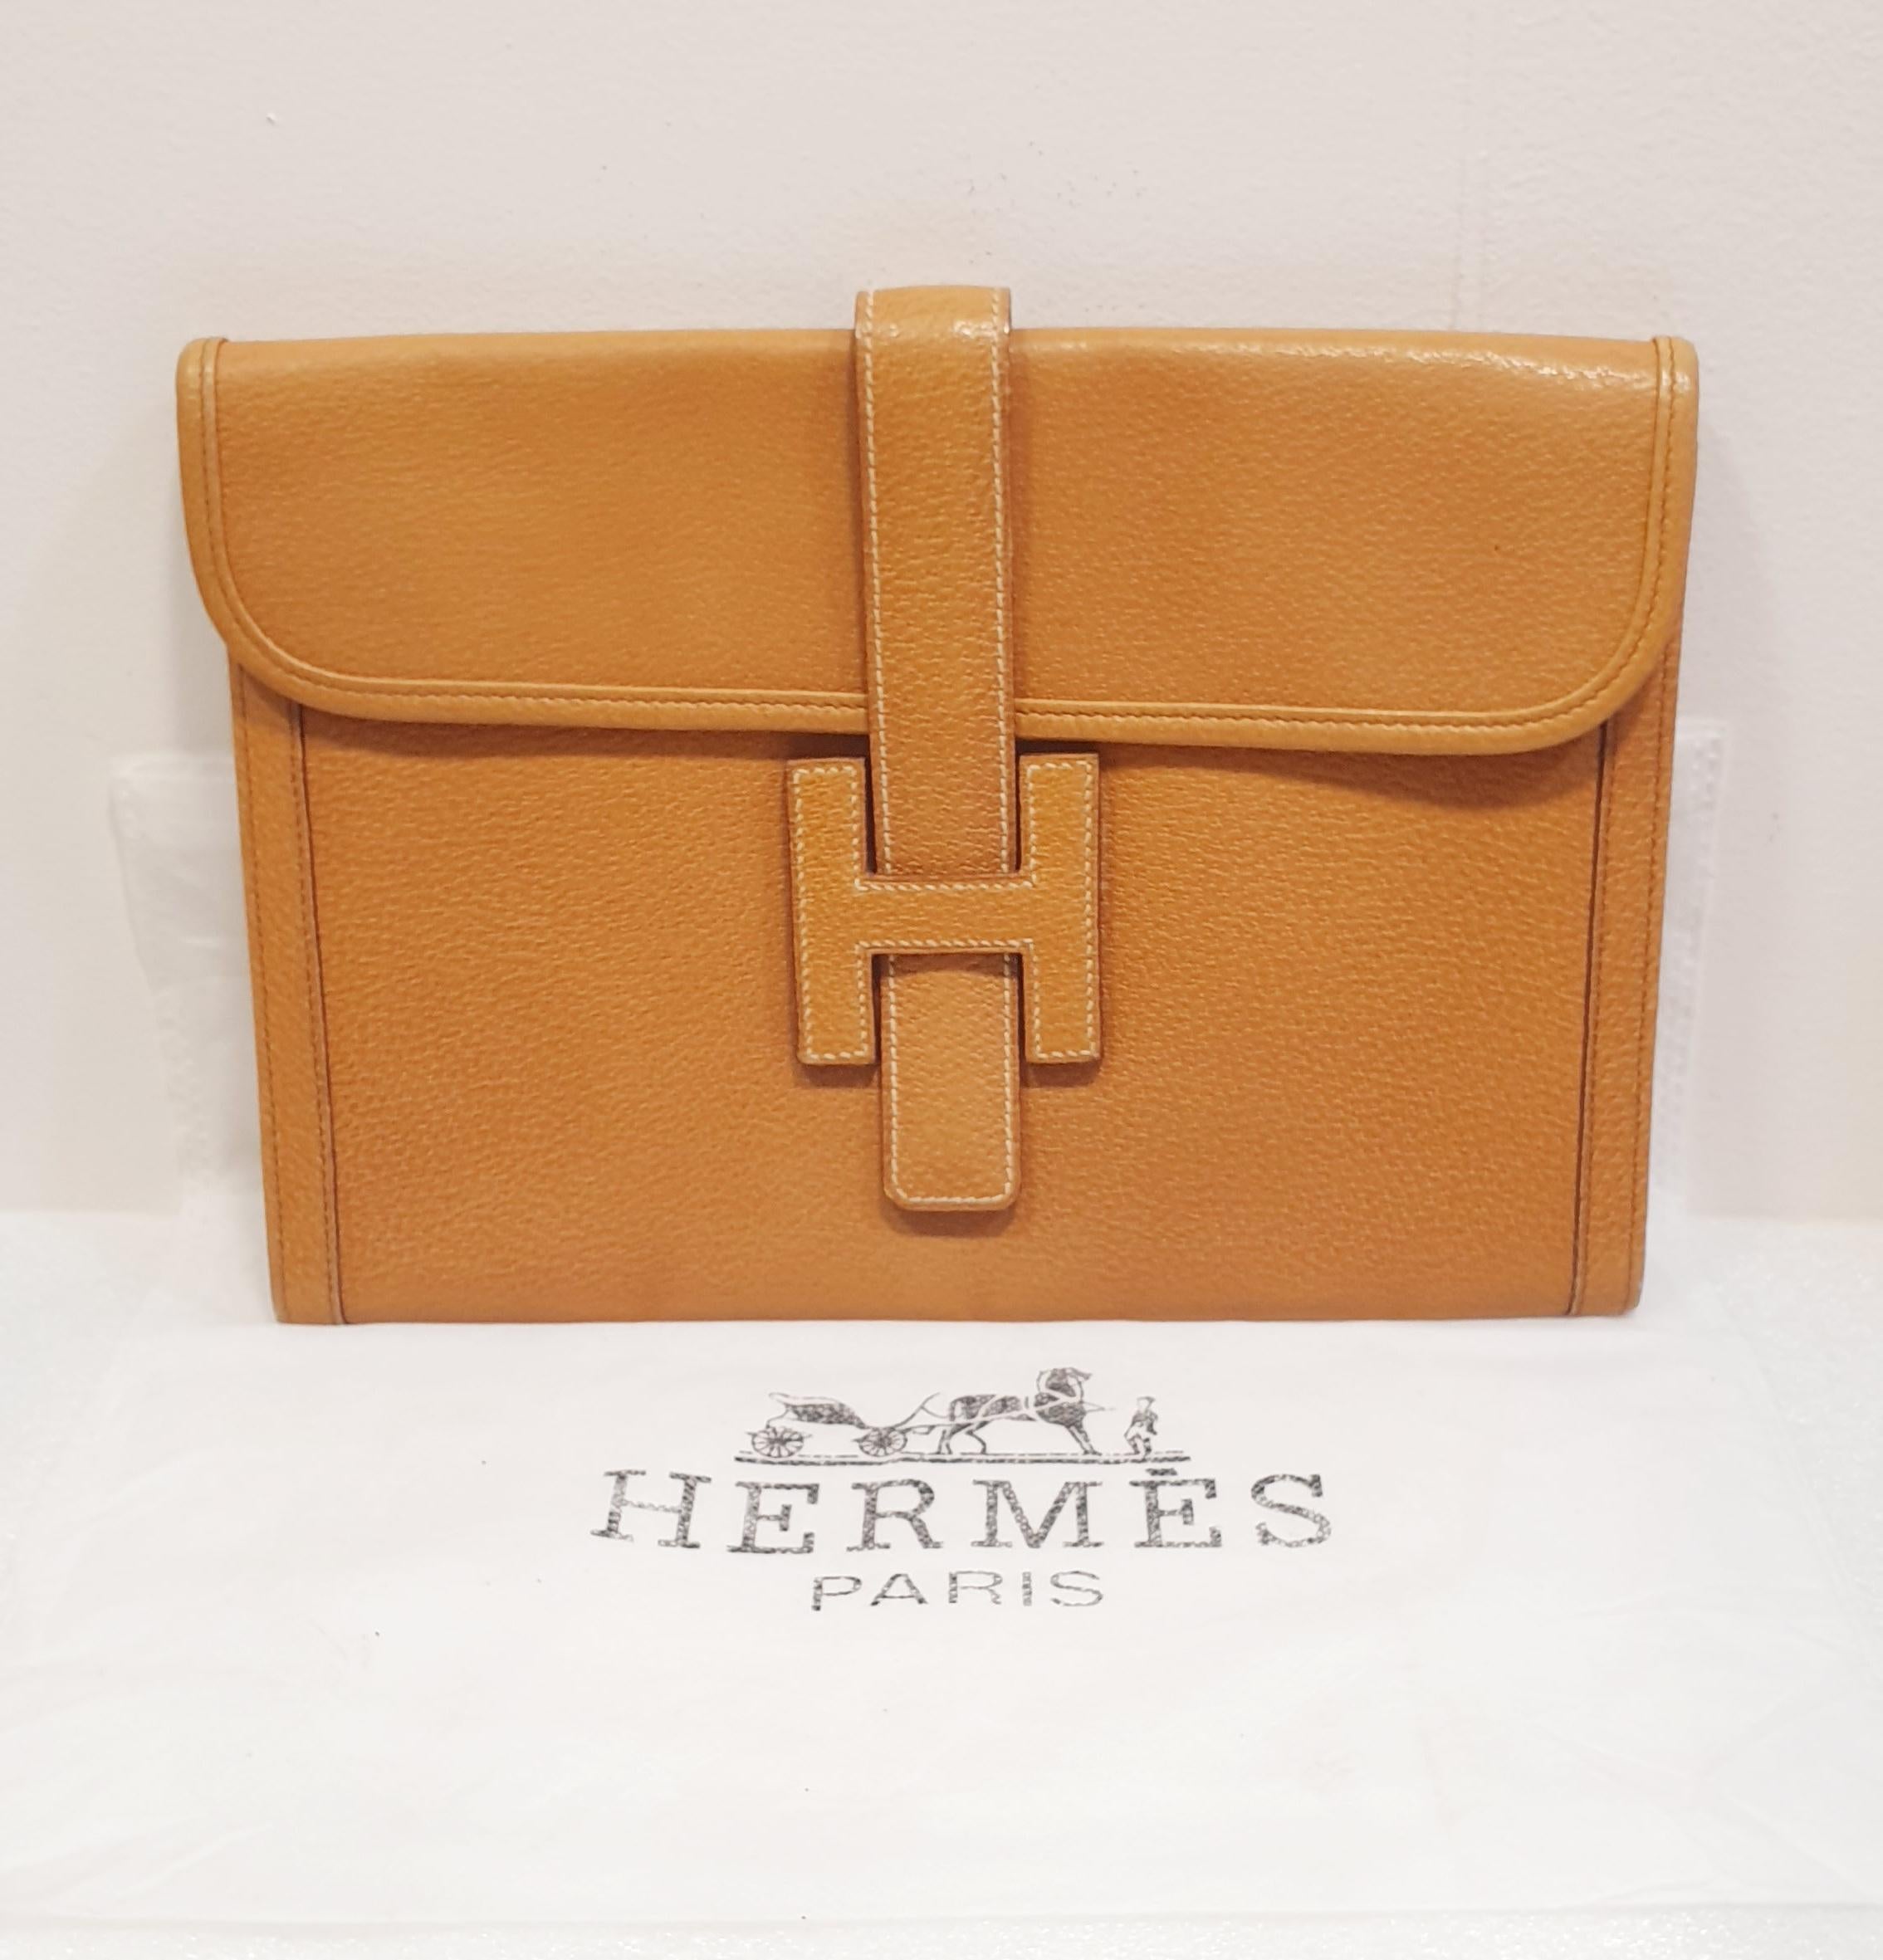 Hermes Peacock Bag - 2 For Sale on 1stDibs